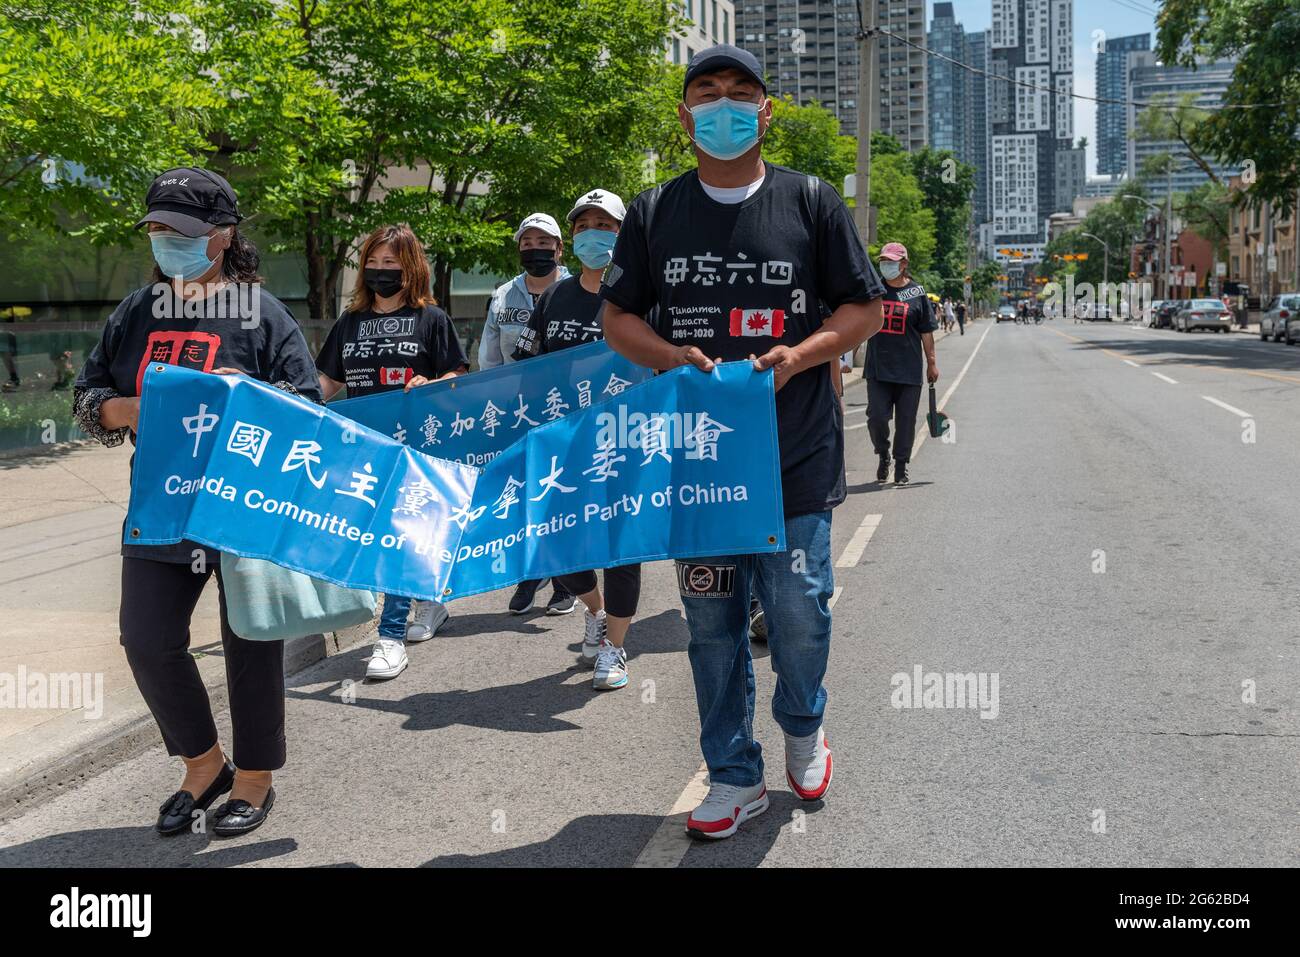 La comunidad china de Toronto protesta contra el Partido Comunista y el Gobierno de China. El evento tiene lugar durante las celebraciones del Día de Canadá. Ellos Foto de stock